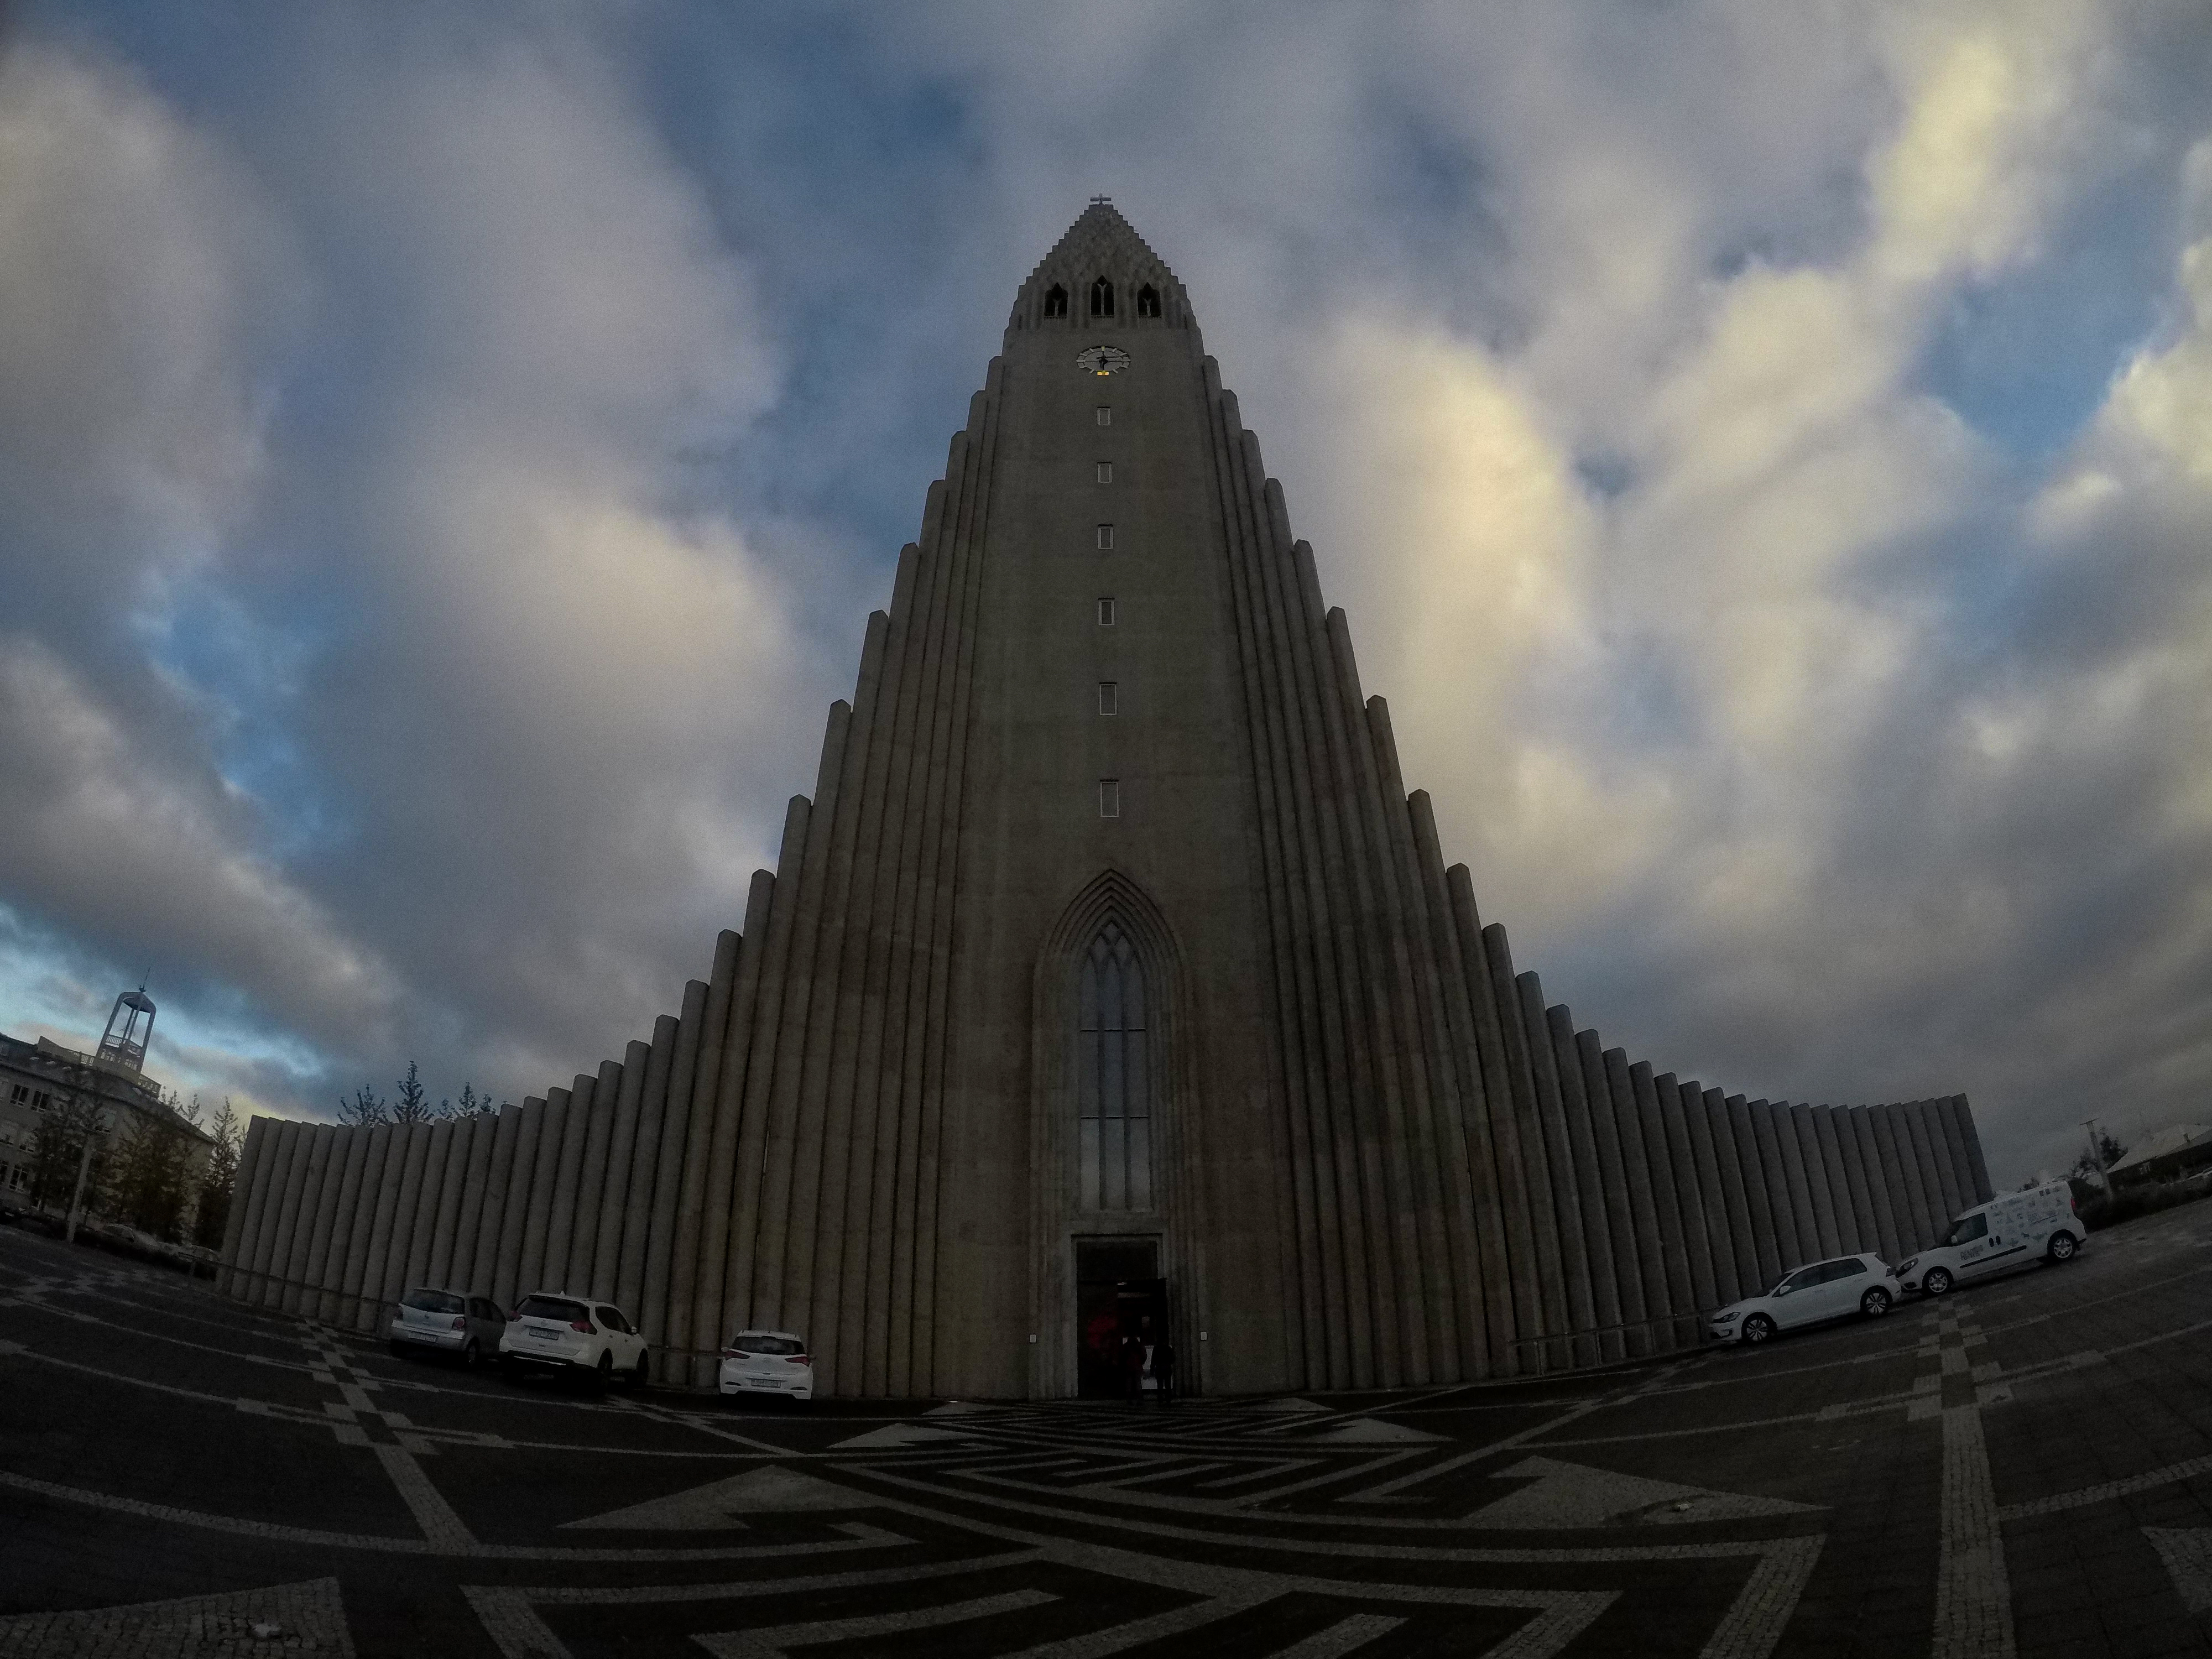 lua de mel na islandia, um dia em reykjavik